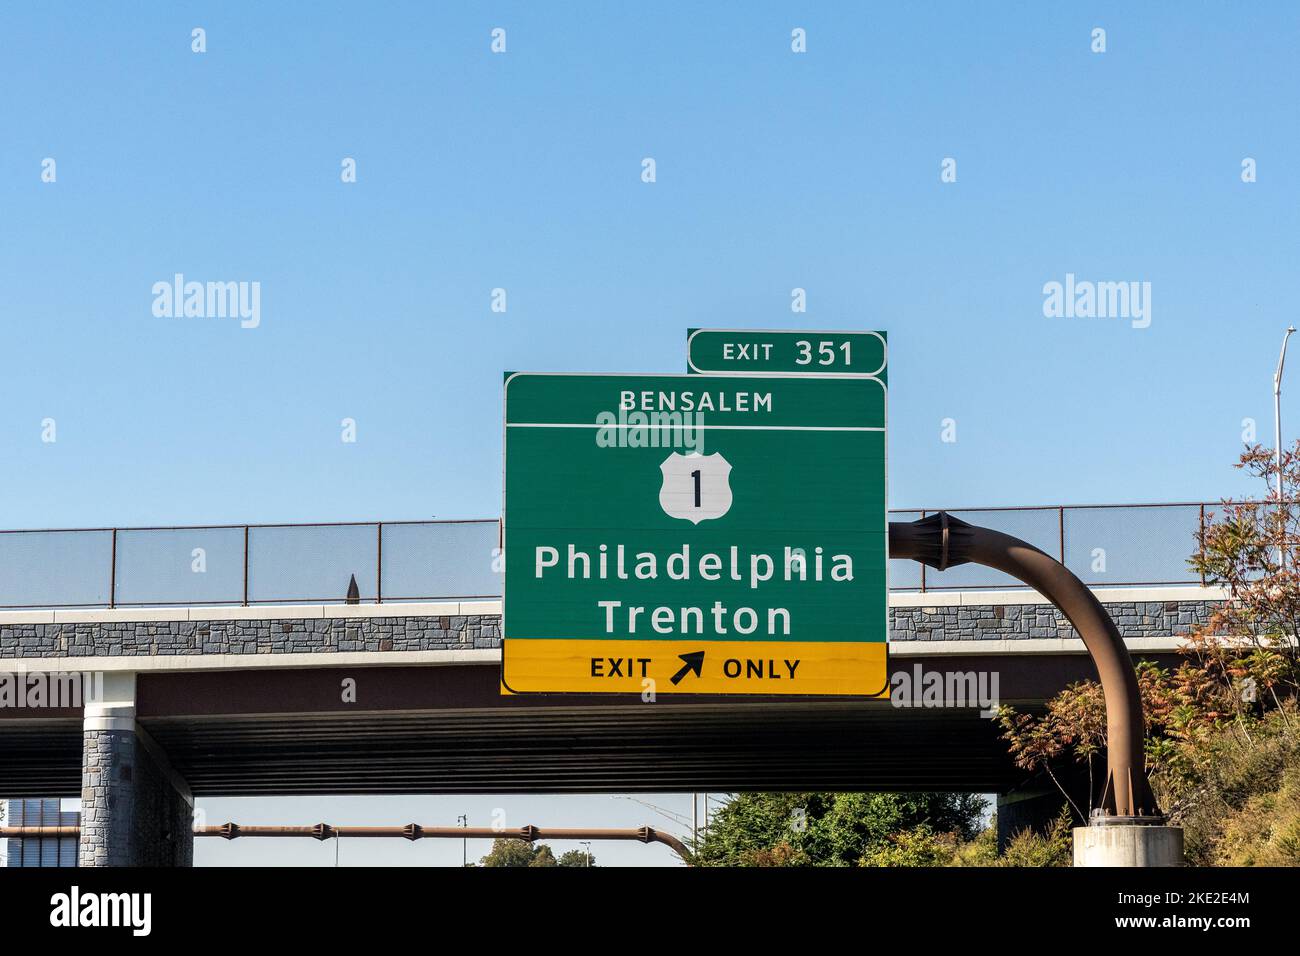 Prenez la sortie 351 et suivez les panneaux Bensalem sur l'autoroute à péage de Pennsylvanie pour prendre la route 1 en direction de Philadelphie et Trenton, dans le New Jersey Banque D'Images